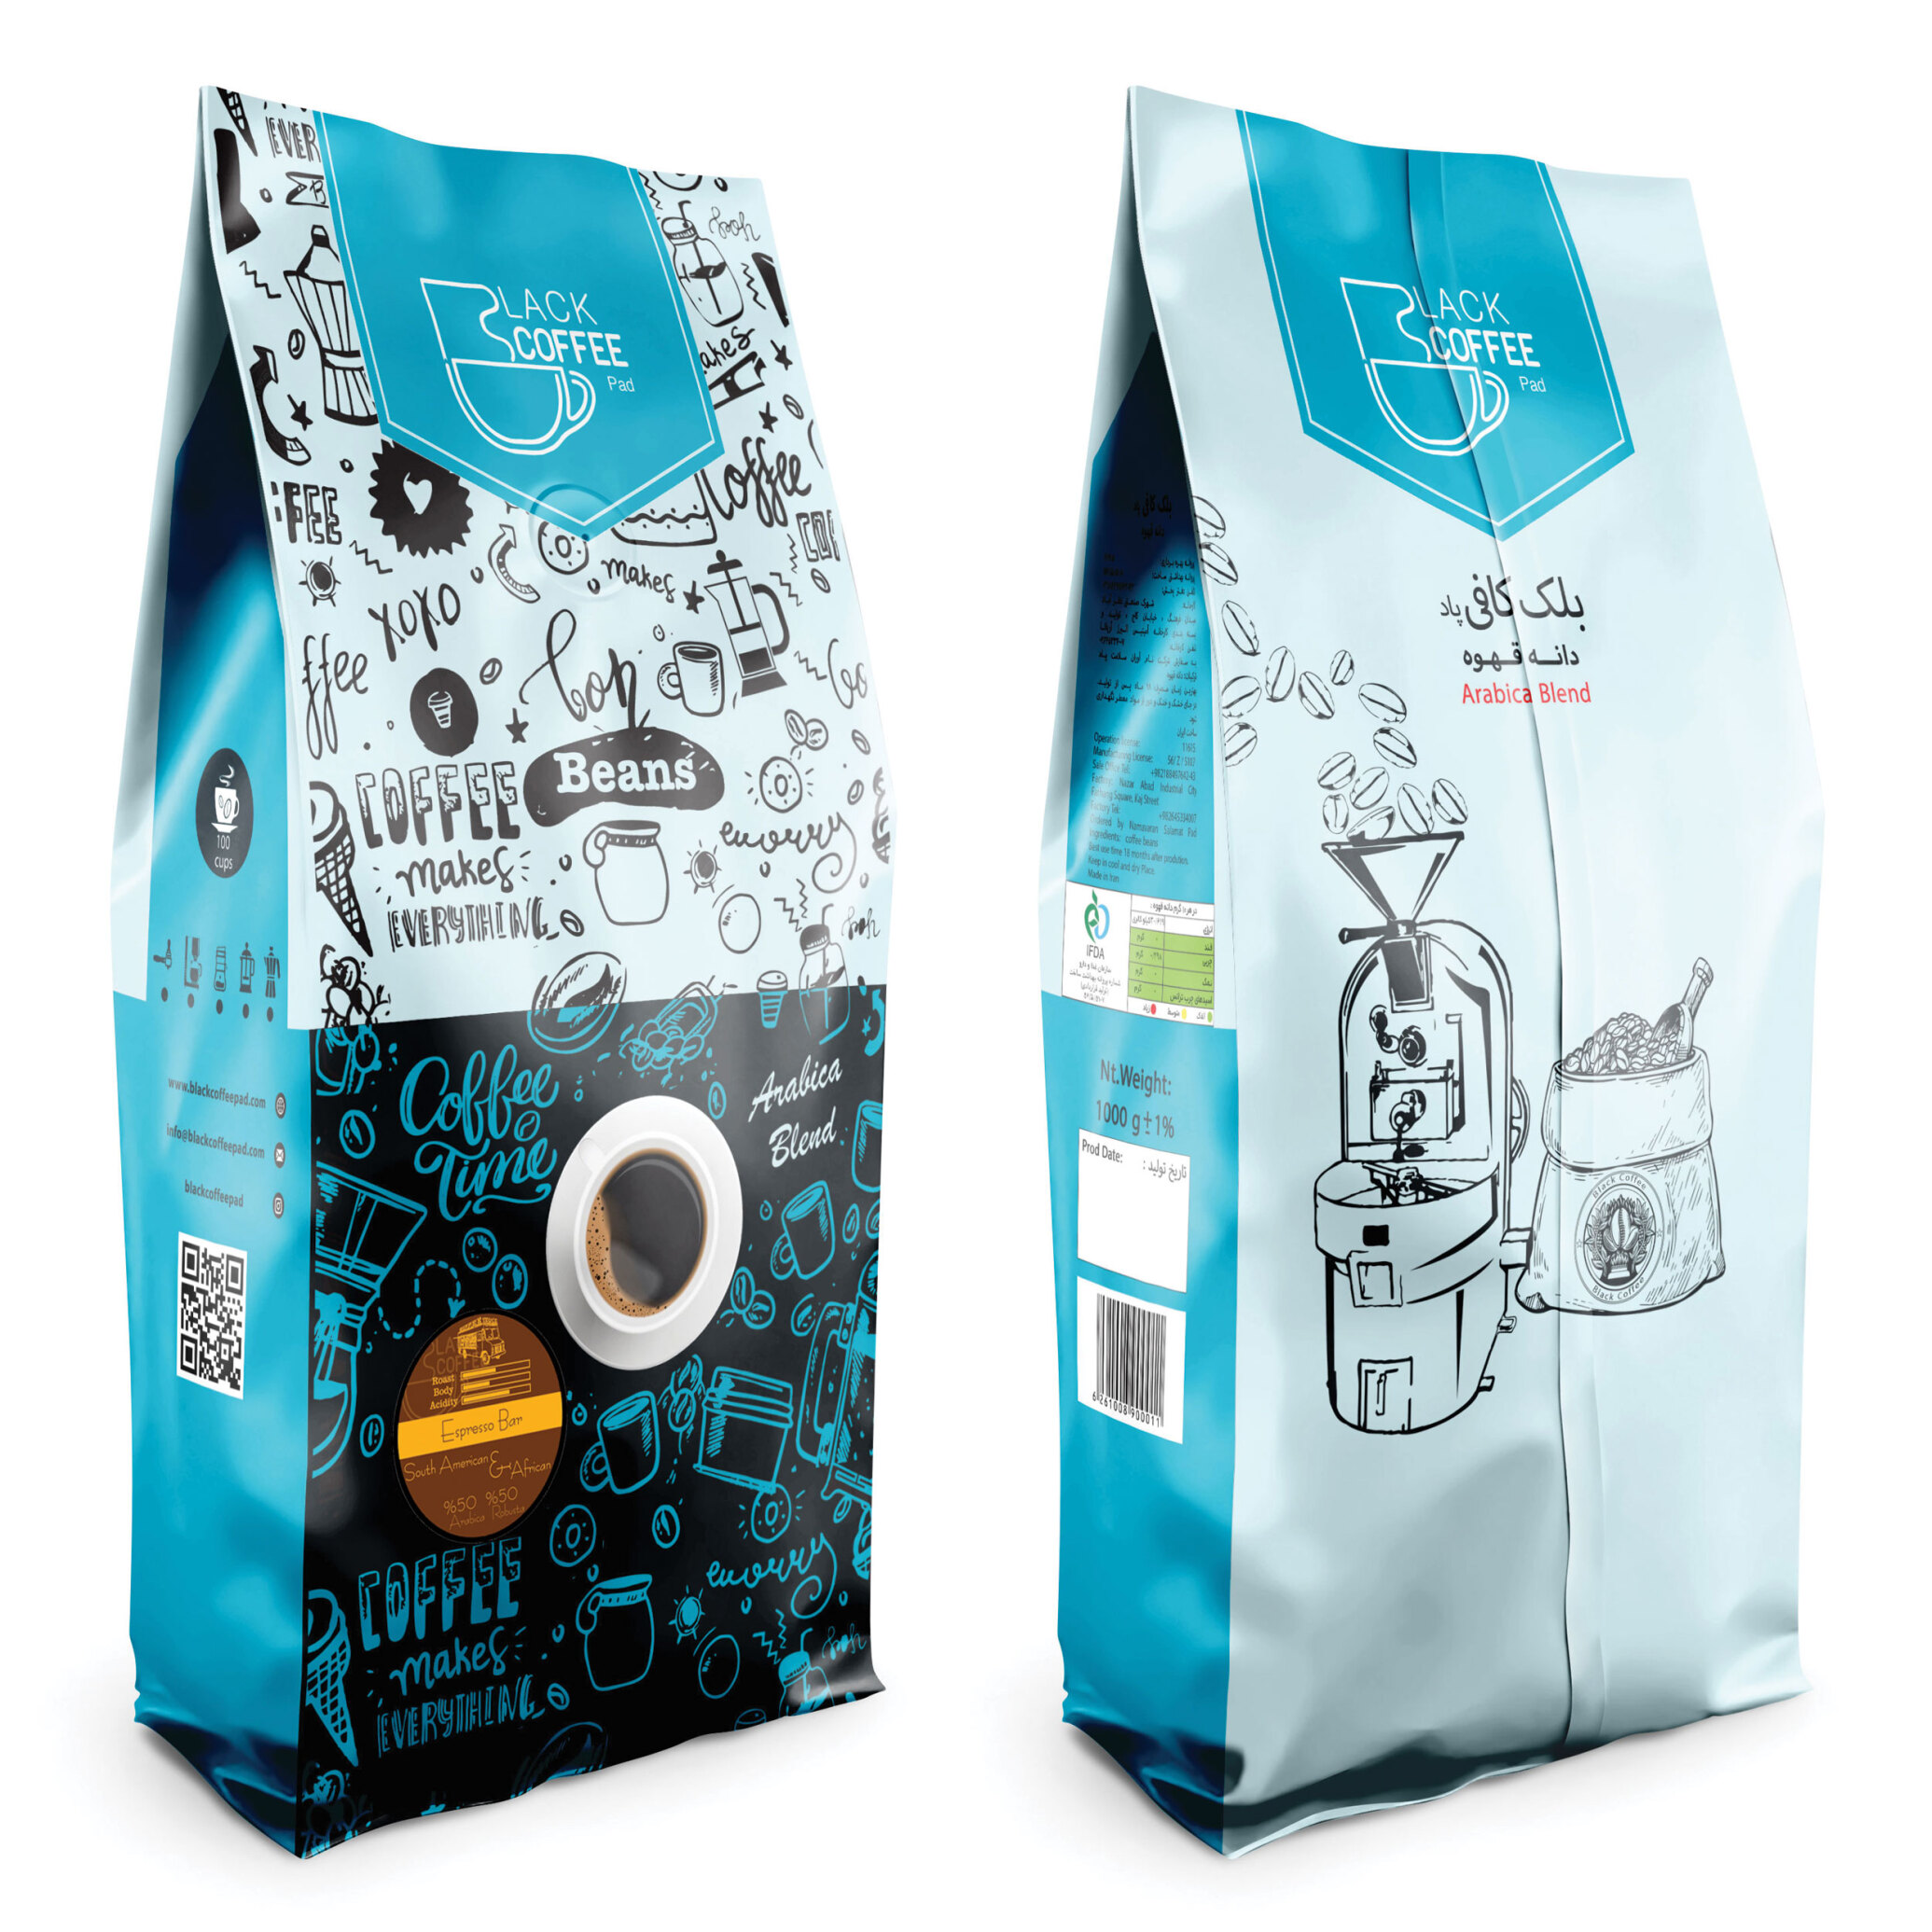  دانه قهوه اسپرسو بار - Espresso Bar Coffee Beans - کیلوگرم ۱ | بلک کافی | فروشگاه محصولات قهوه و دانه قهوه 